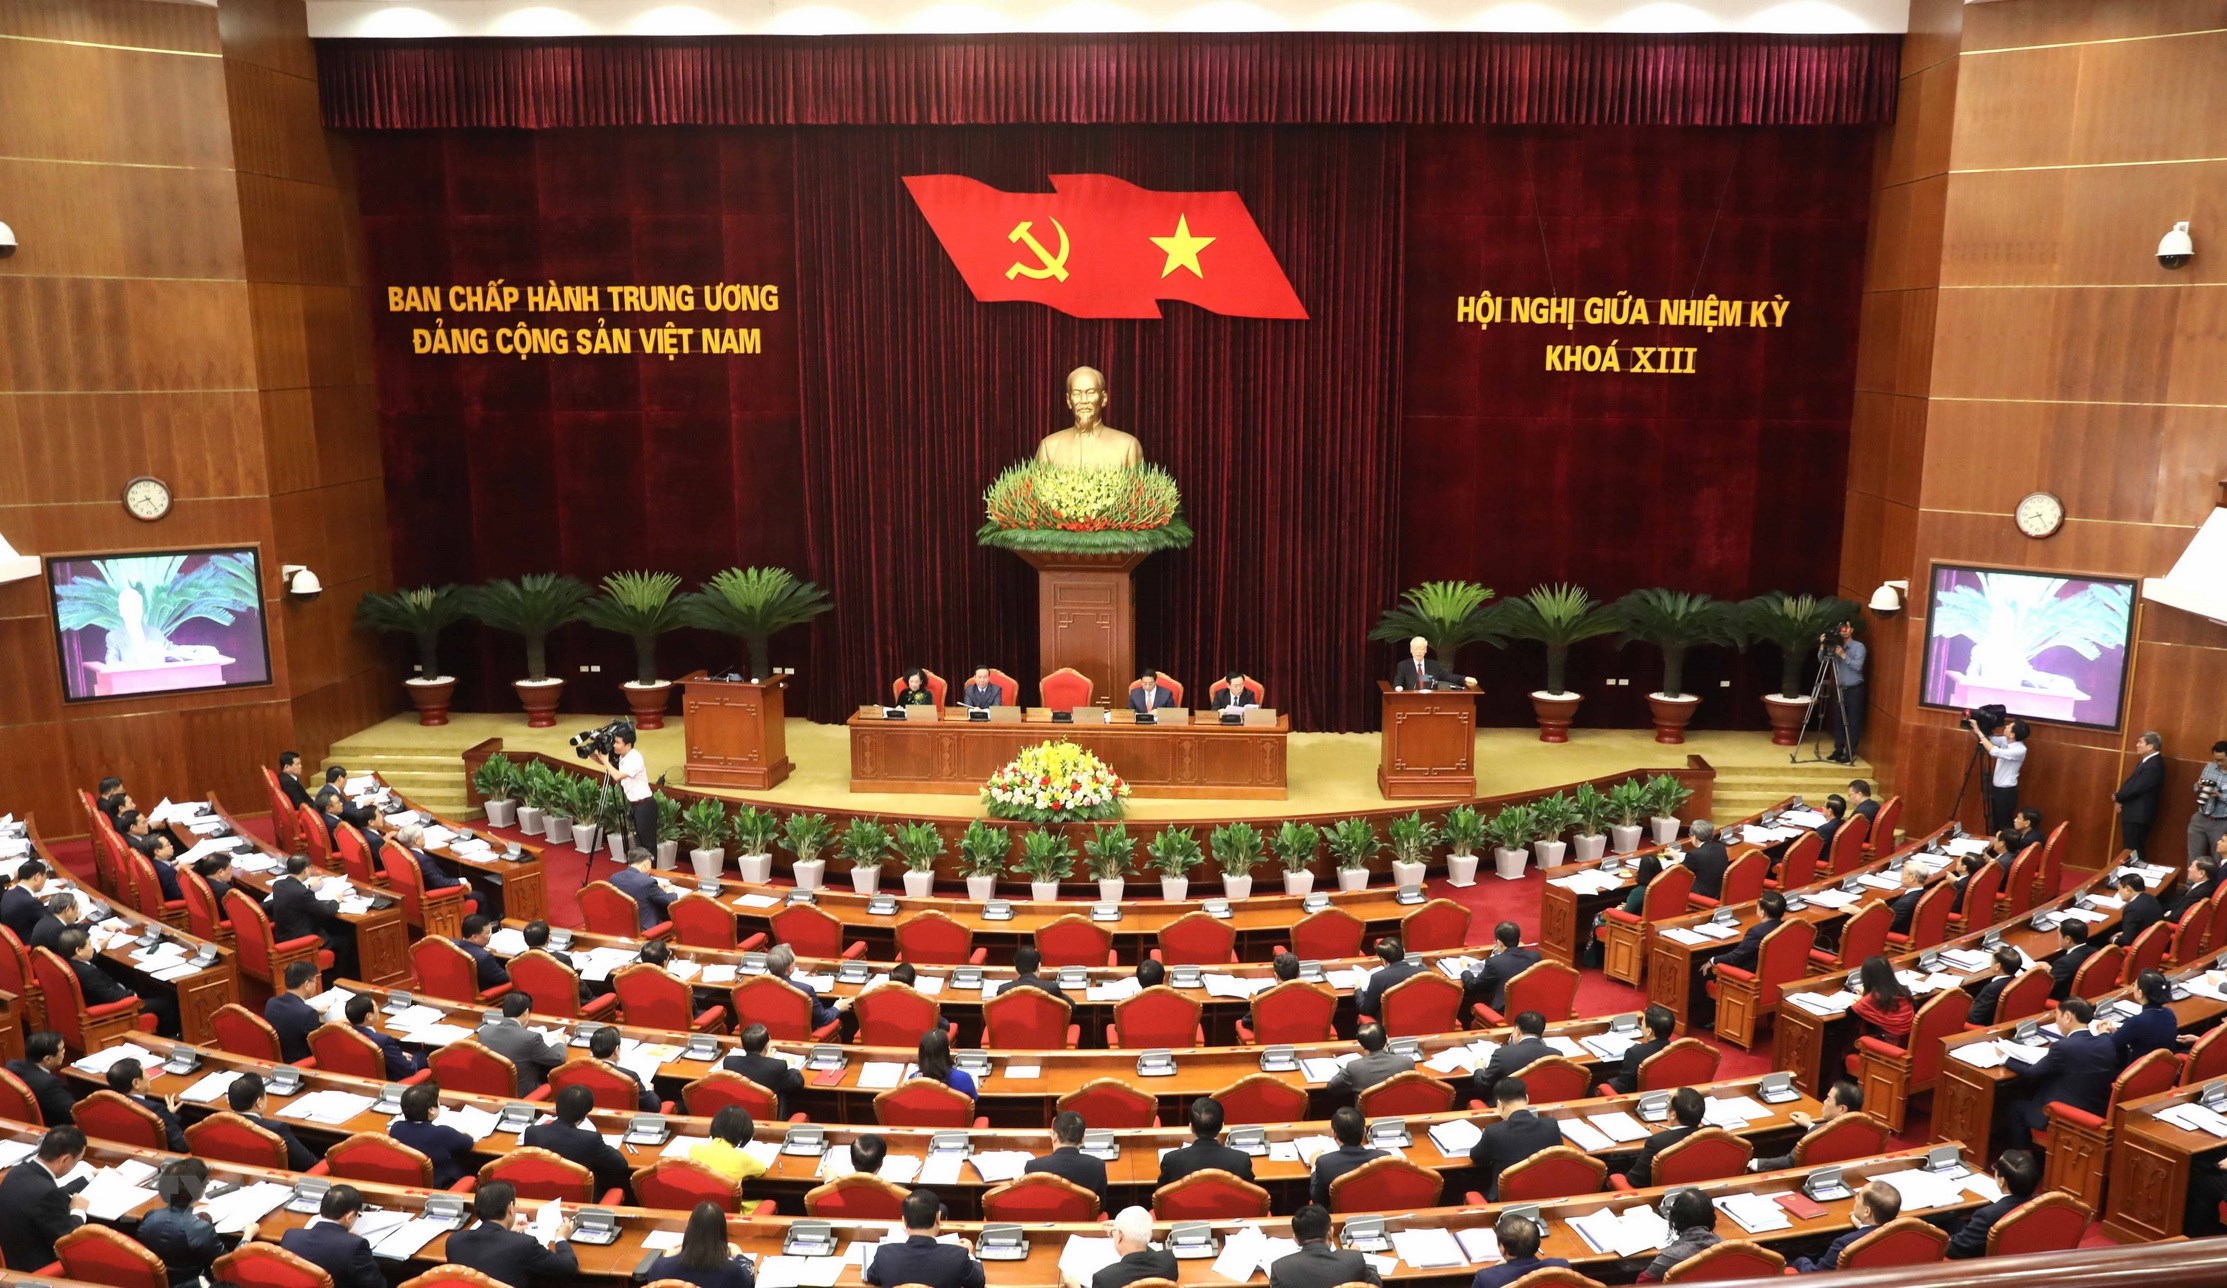 Hội nghị giữa nhiệm kỳ Ban Chấp hành Trung ương Đảng khóa XIII sáng 15/5. Ảnh: TTXVN.